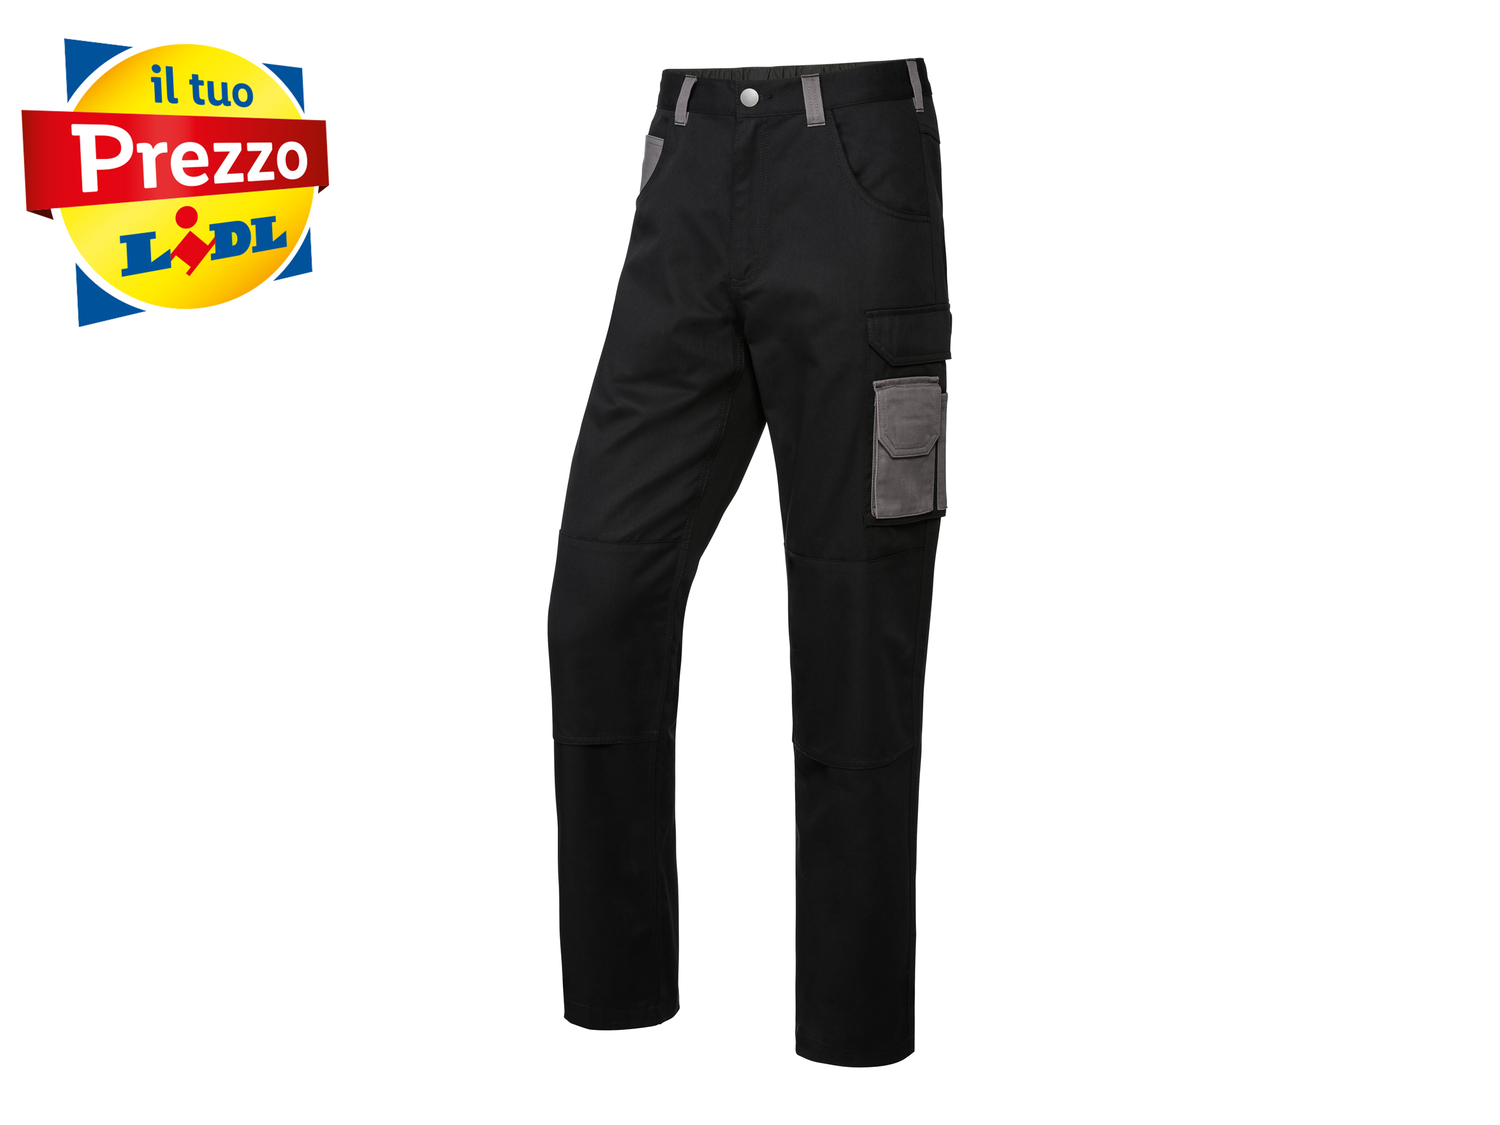 Pantaloni da lavoro per uomo Parkside, prezzo 9.99 € 
Misure: 46-56 
- Rinforzo ...